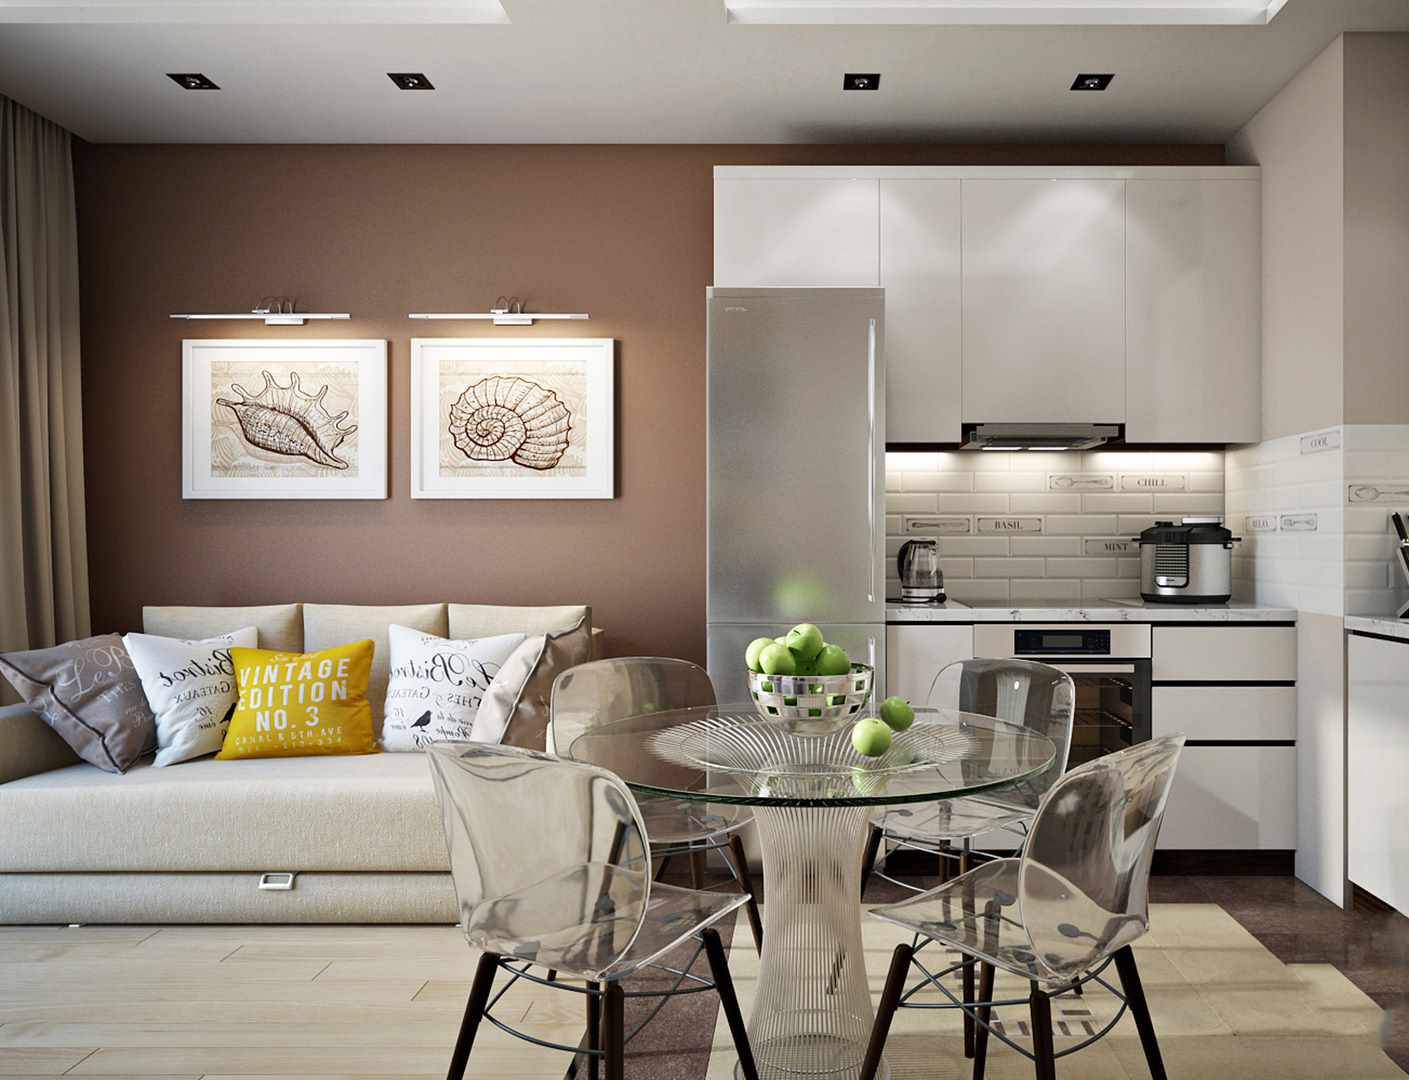 Um exemplo de uma cozinha interior brilhante 16 m²